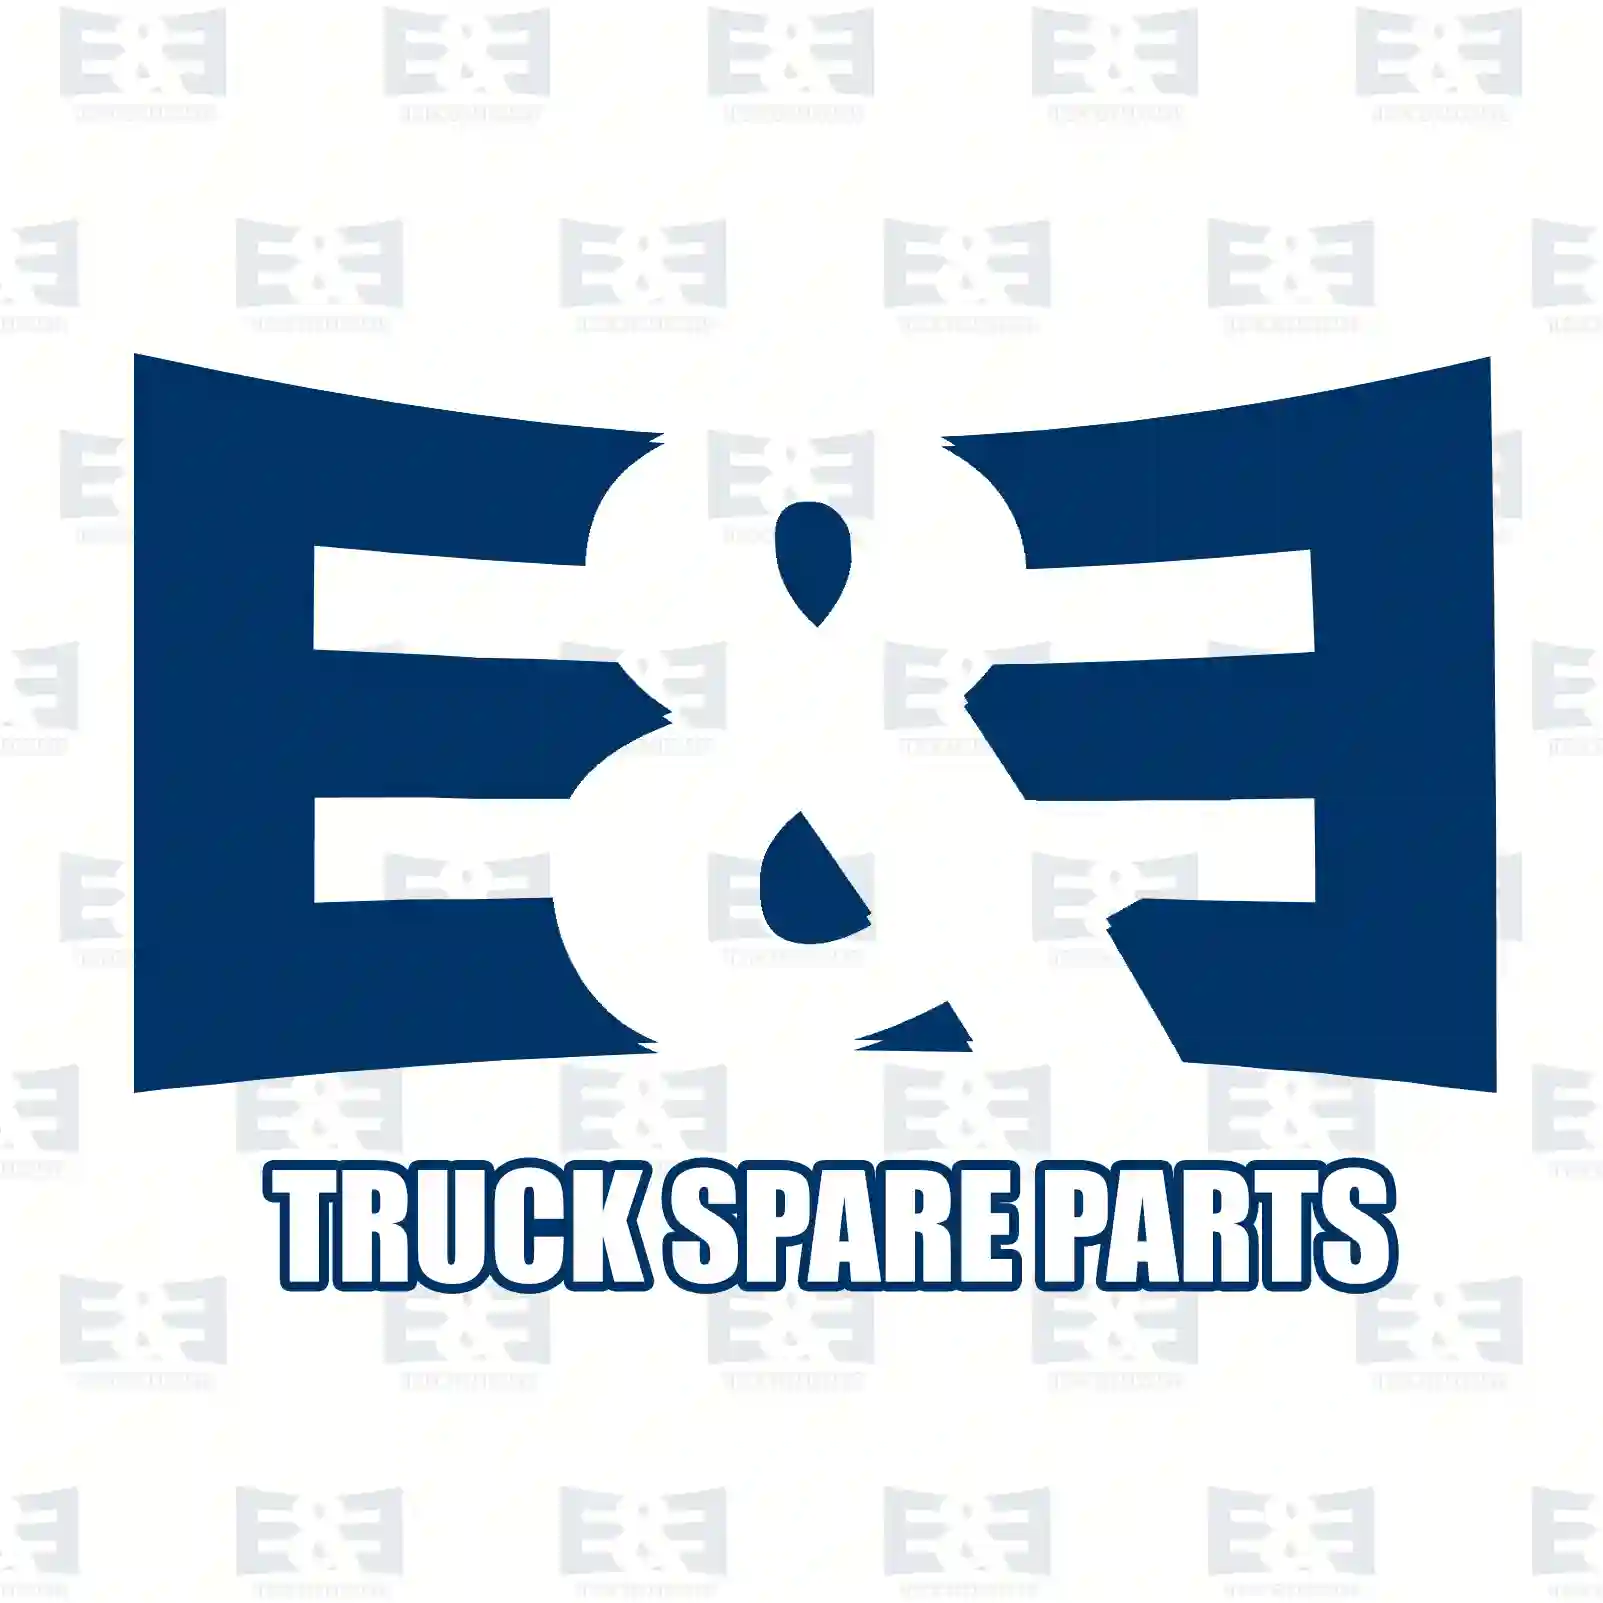 Cabin shock absorber, 2E2276467, 85417226027, 8541 ||  2E2276467 E&E Truck Spare Parts | Truck Spare Parts, Auotomotive Spare Parts Cabin shock absorber, 2E2276467, 85417226027, 8541 ||  2E2276467 E&E Truck Spare Parts | Truck Spare Parts, Auotomotive Spare Parts